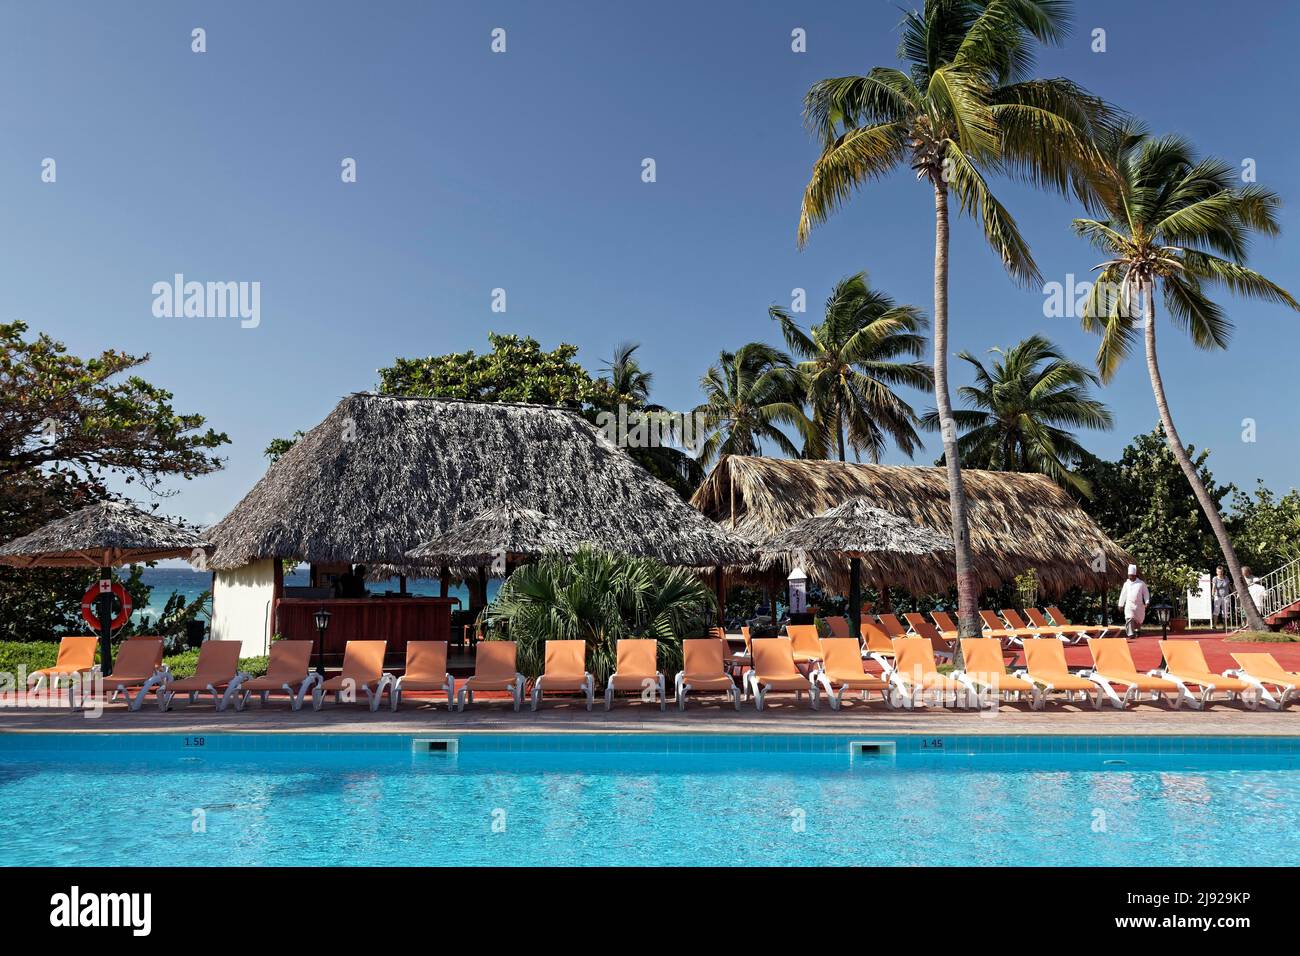 Swimming Pool, Sunbeds, Bar, Cocos coconut palm (Cocos nucifera), Hotel Club Amigo Costasur, Playa Ancon, Trinidad, Sancti Spiritus Province, Cuba Stock Photo